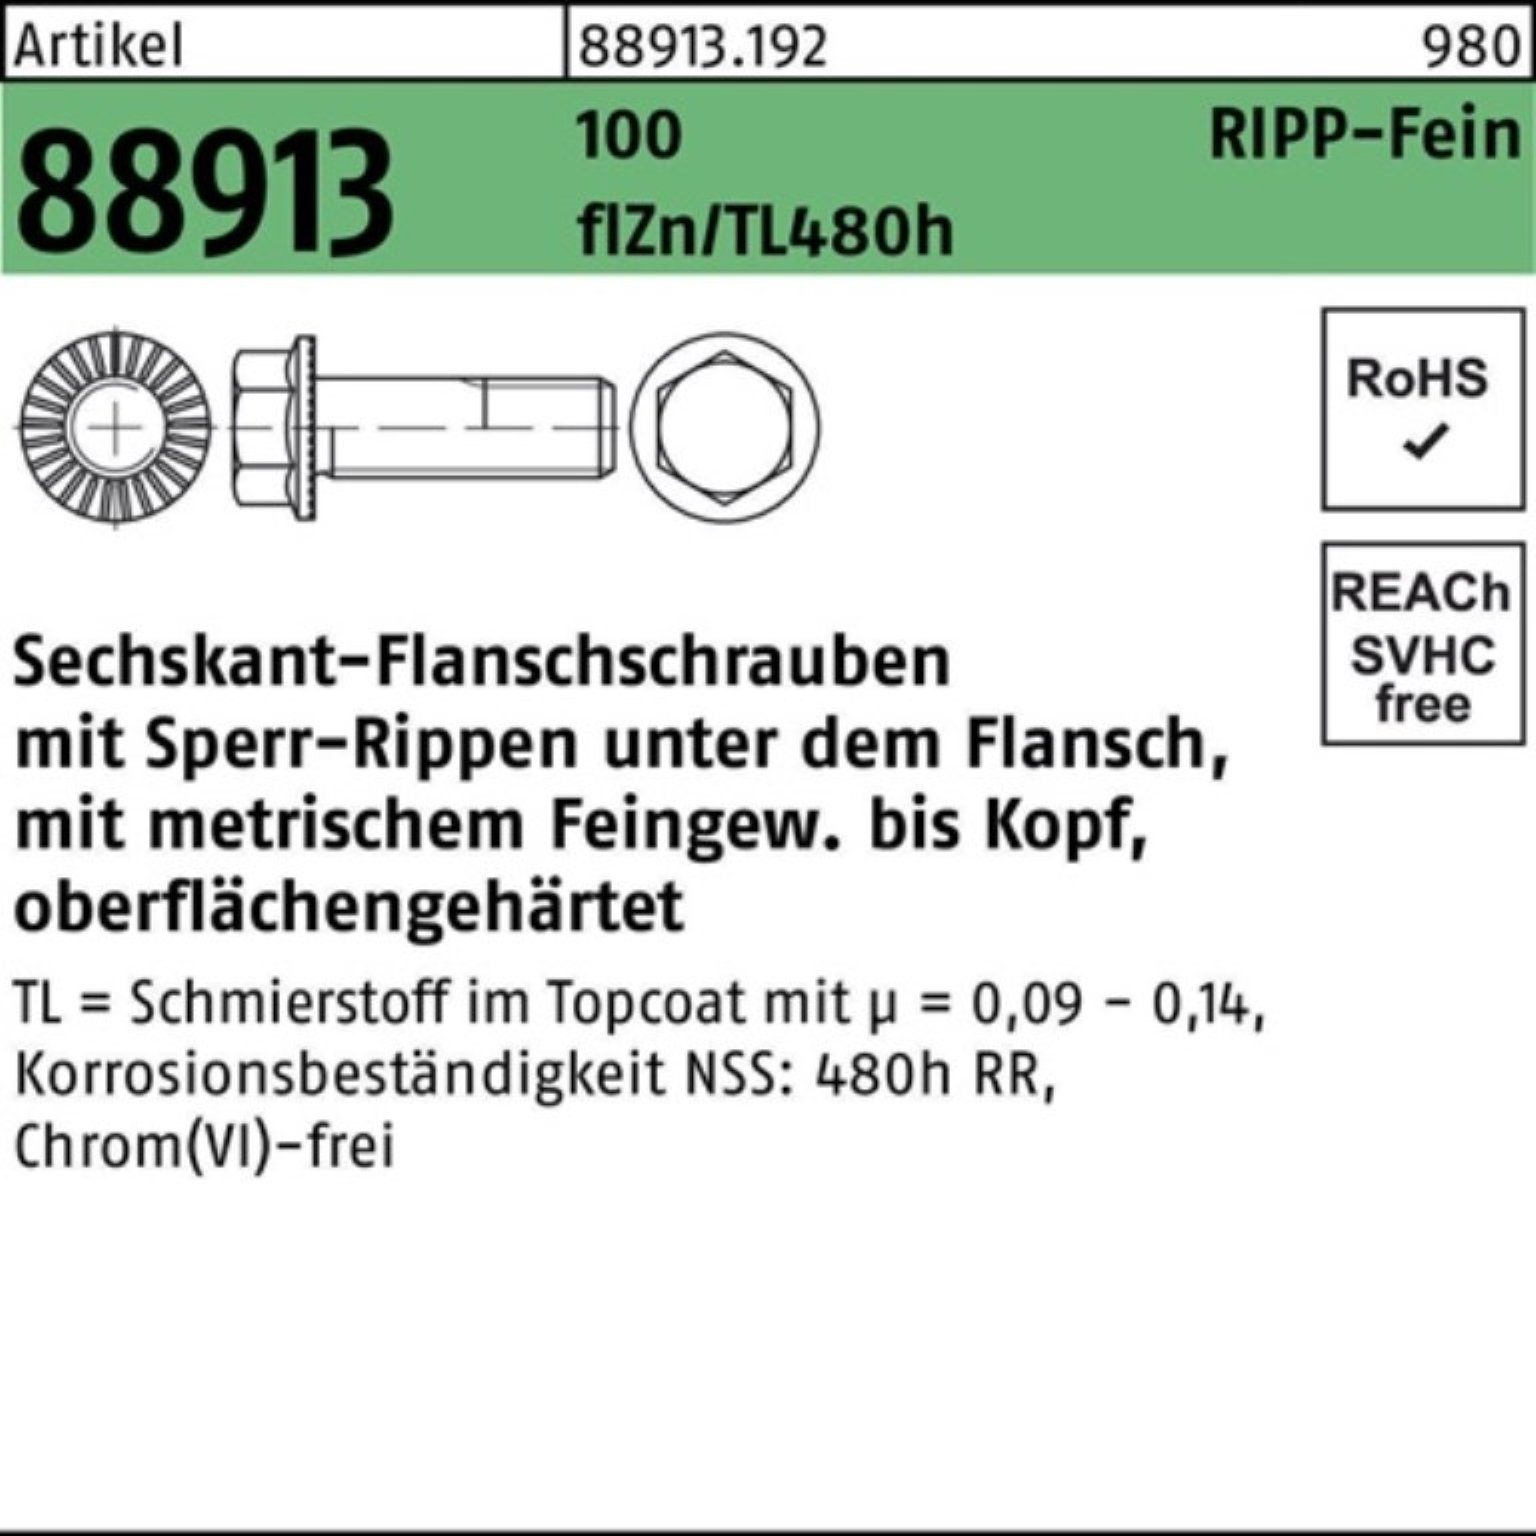 VG 100er R M14x1,5x30 Pack Reyher 88913 1 Schraube Sperr-Ripp Sechskantflanschschraube